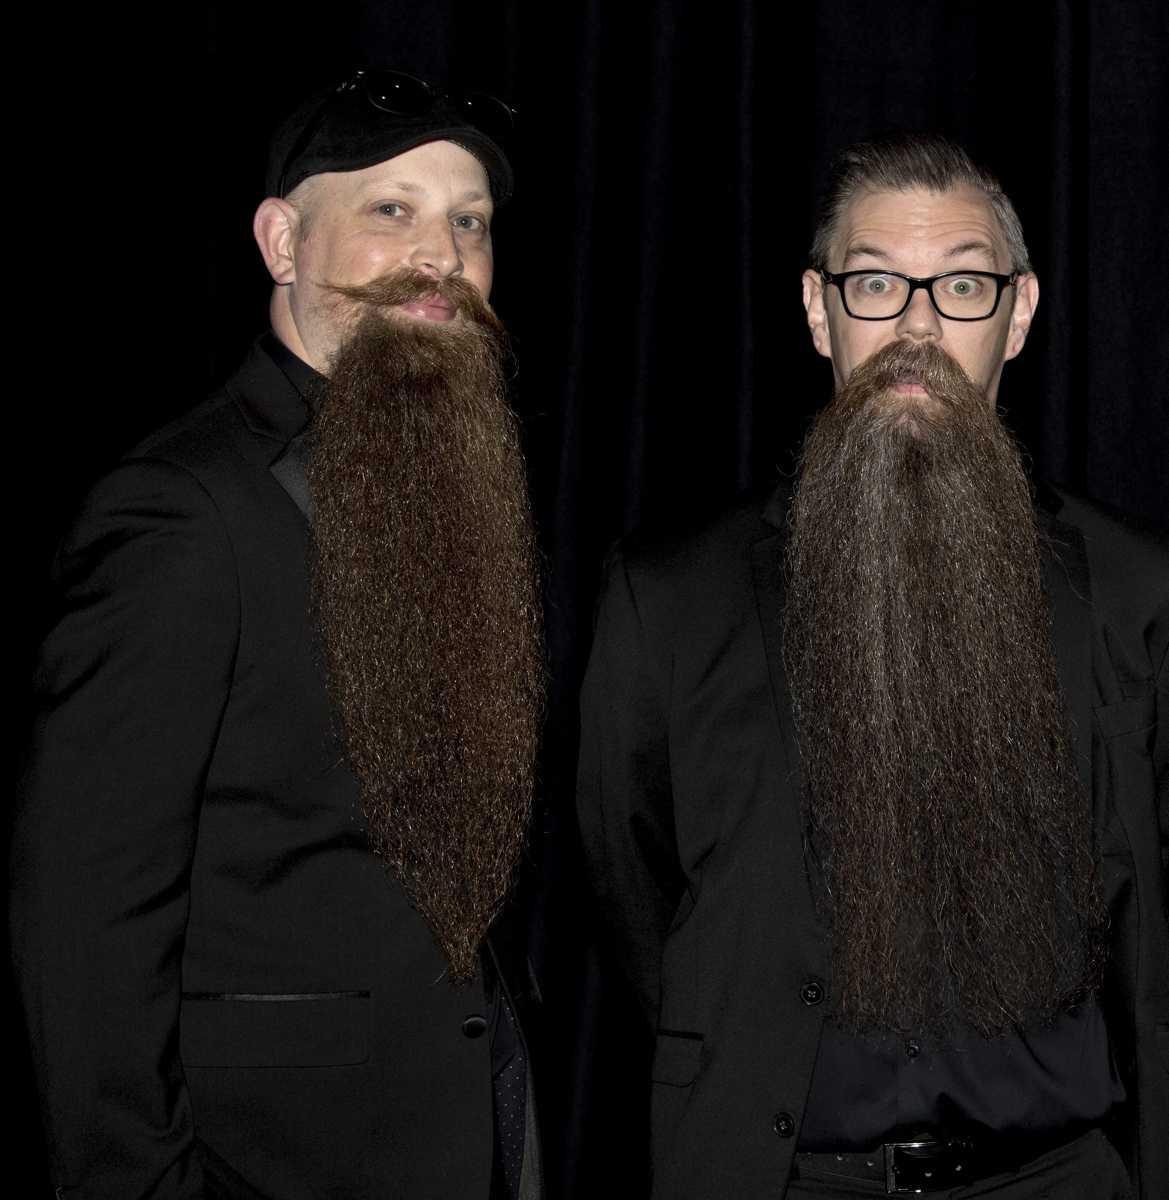 [Focus] - Un concours insolite au poil ! Par ici les photographies des plus belles barbes et moustaches 